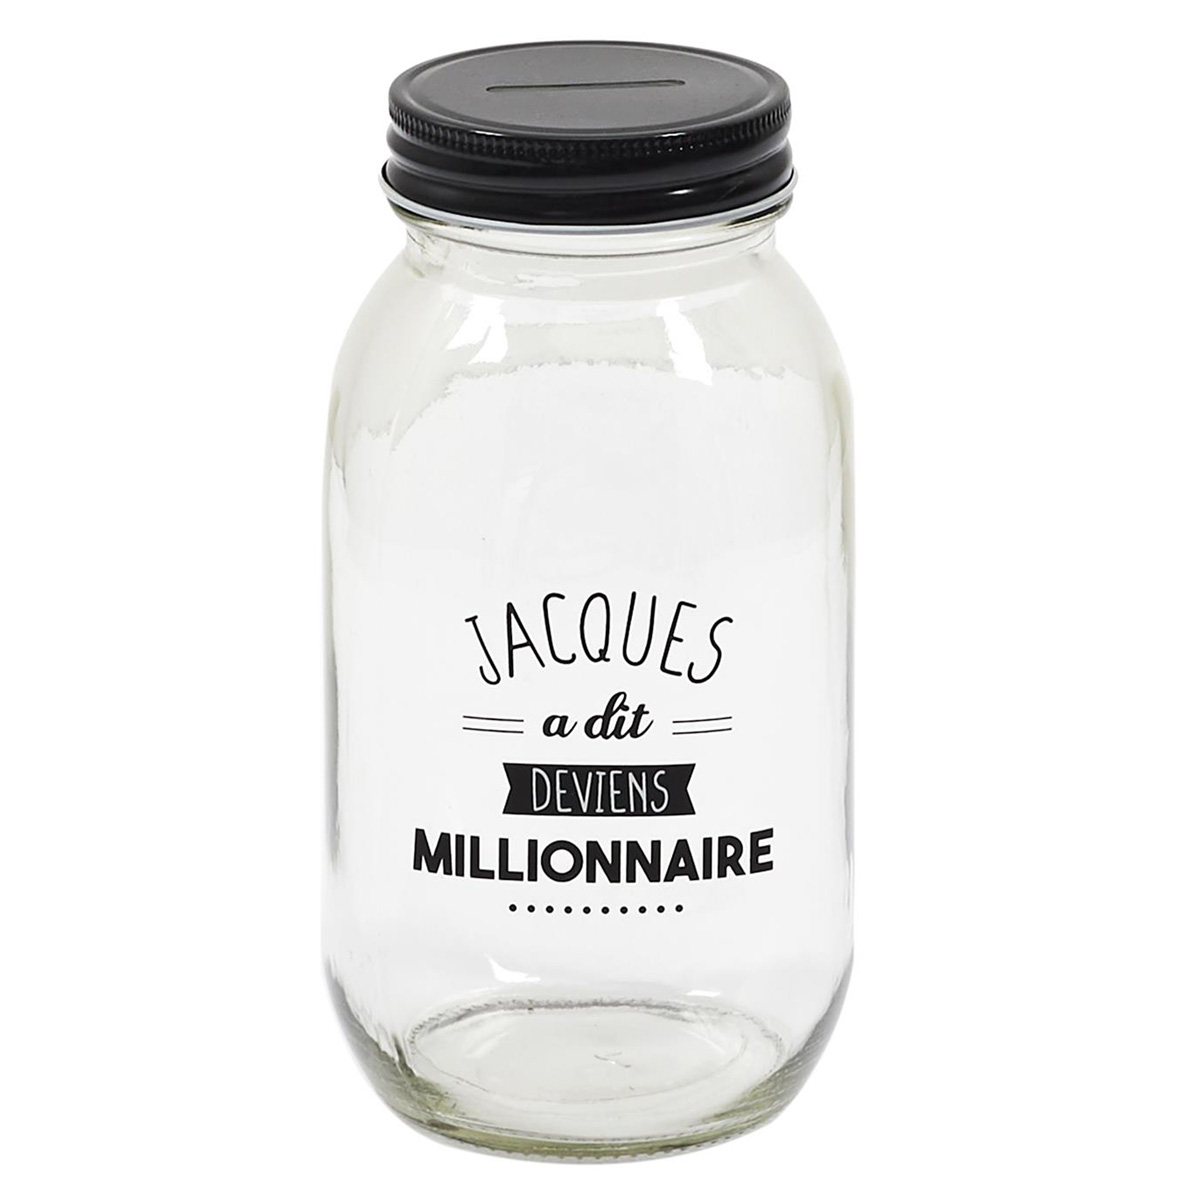 Tirelire mason jar verre \'Jacques a dit\' noir (deviens Millionnaire) - 17x9 cm - [A3677]